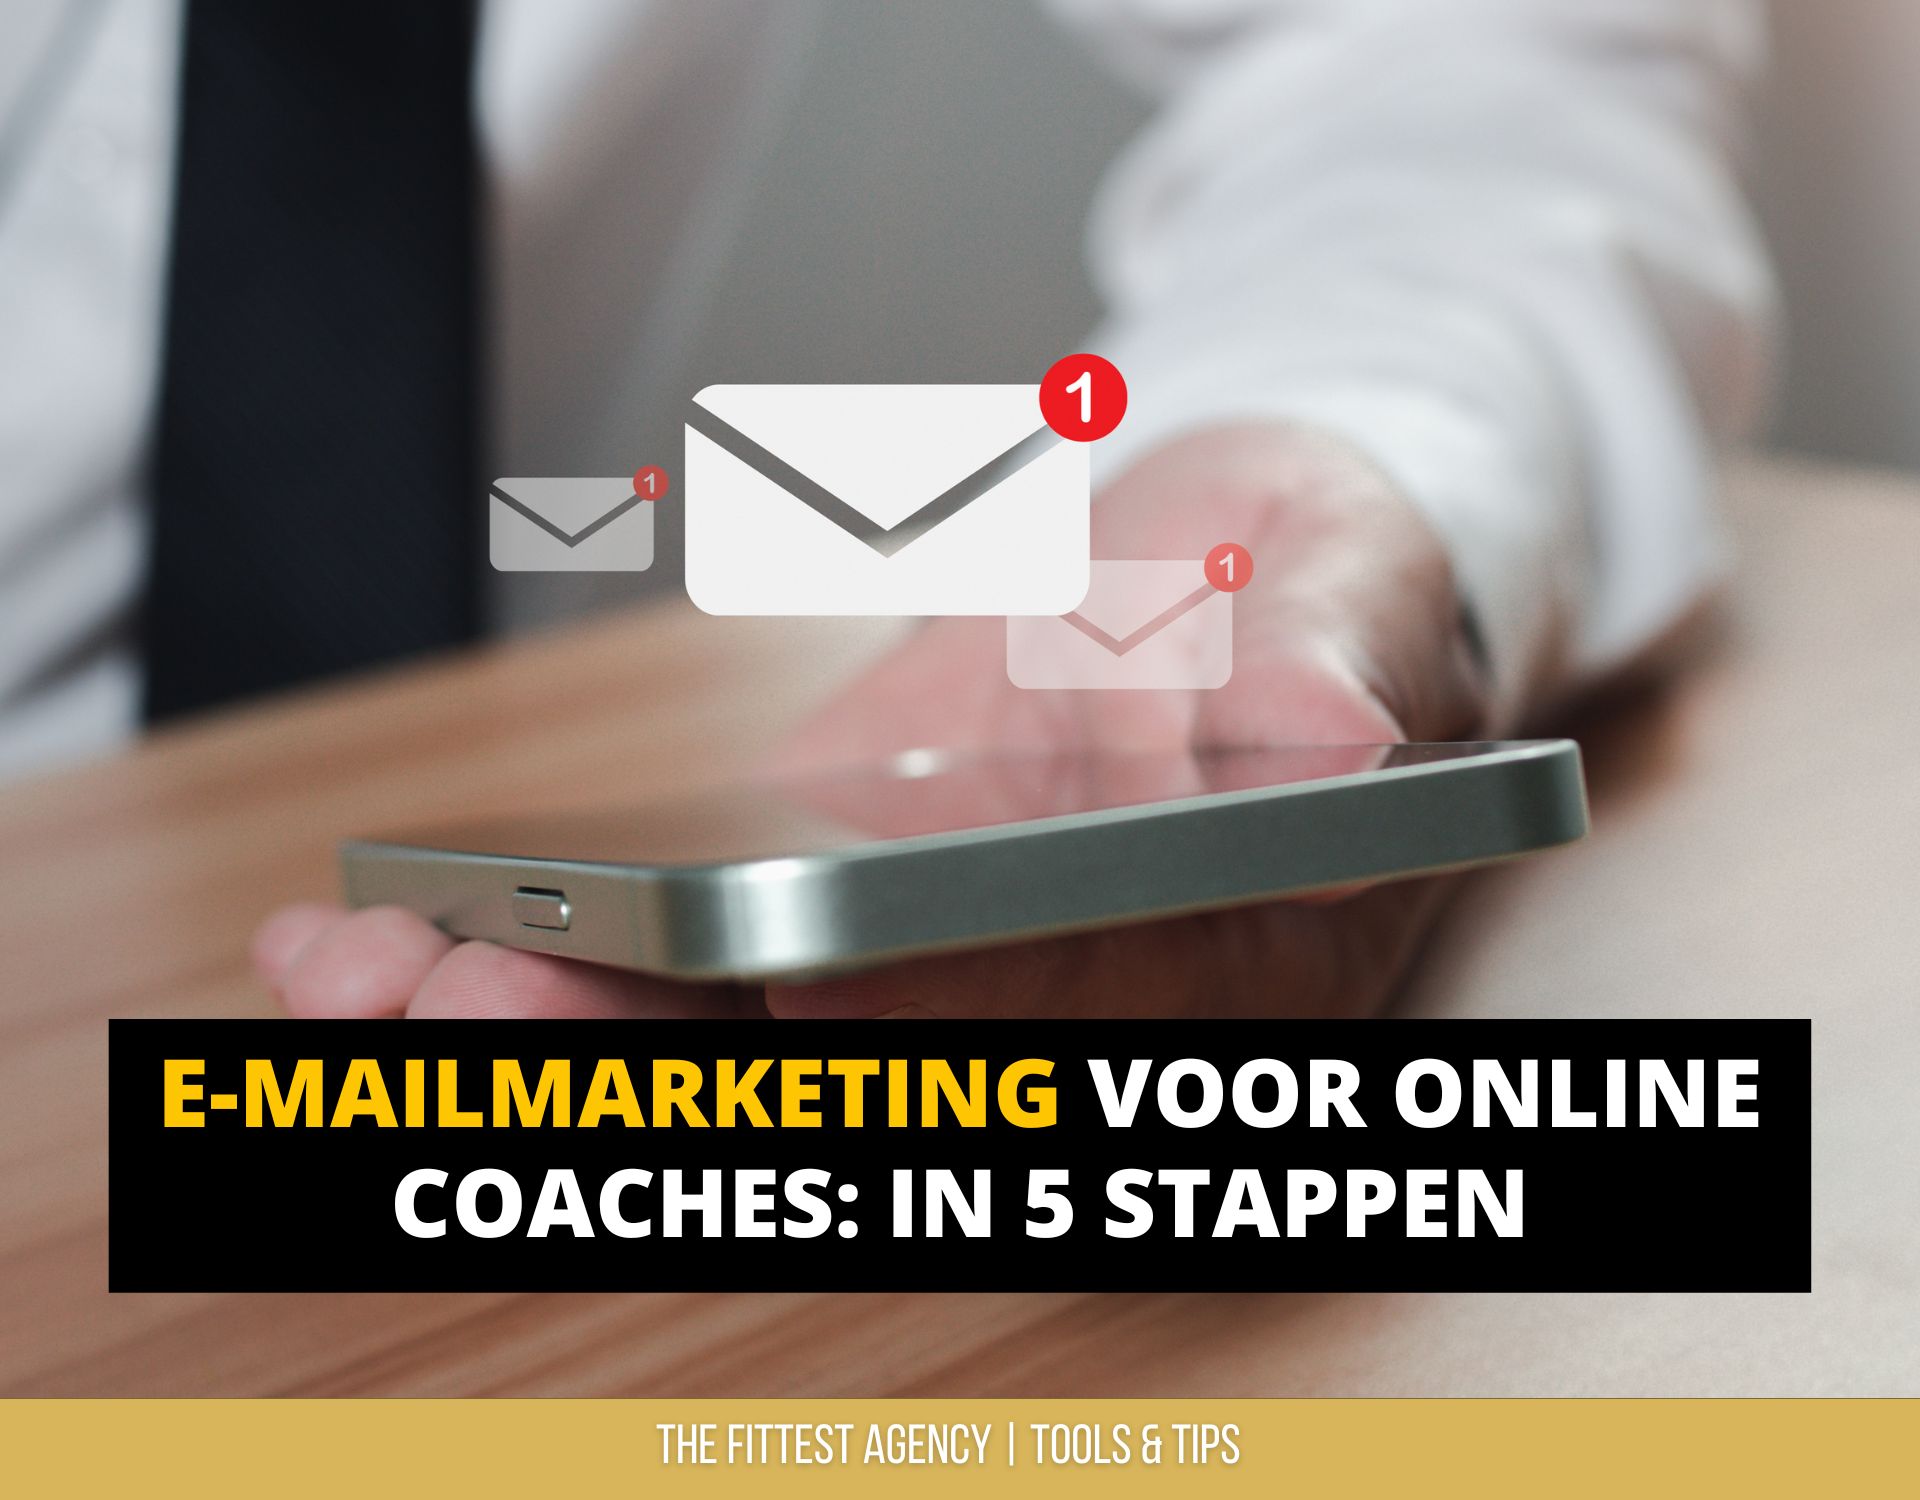 E-mailmarketing voor online coaches in 5 stappen